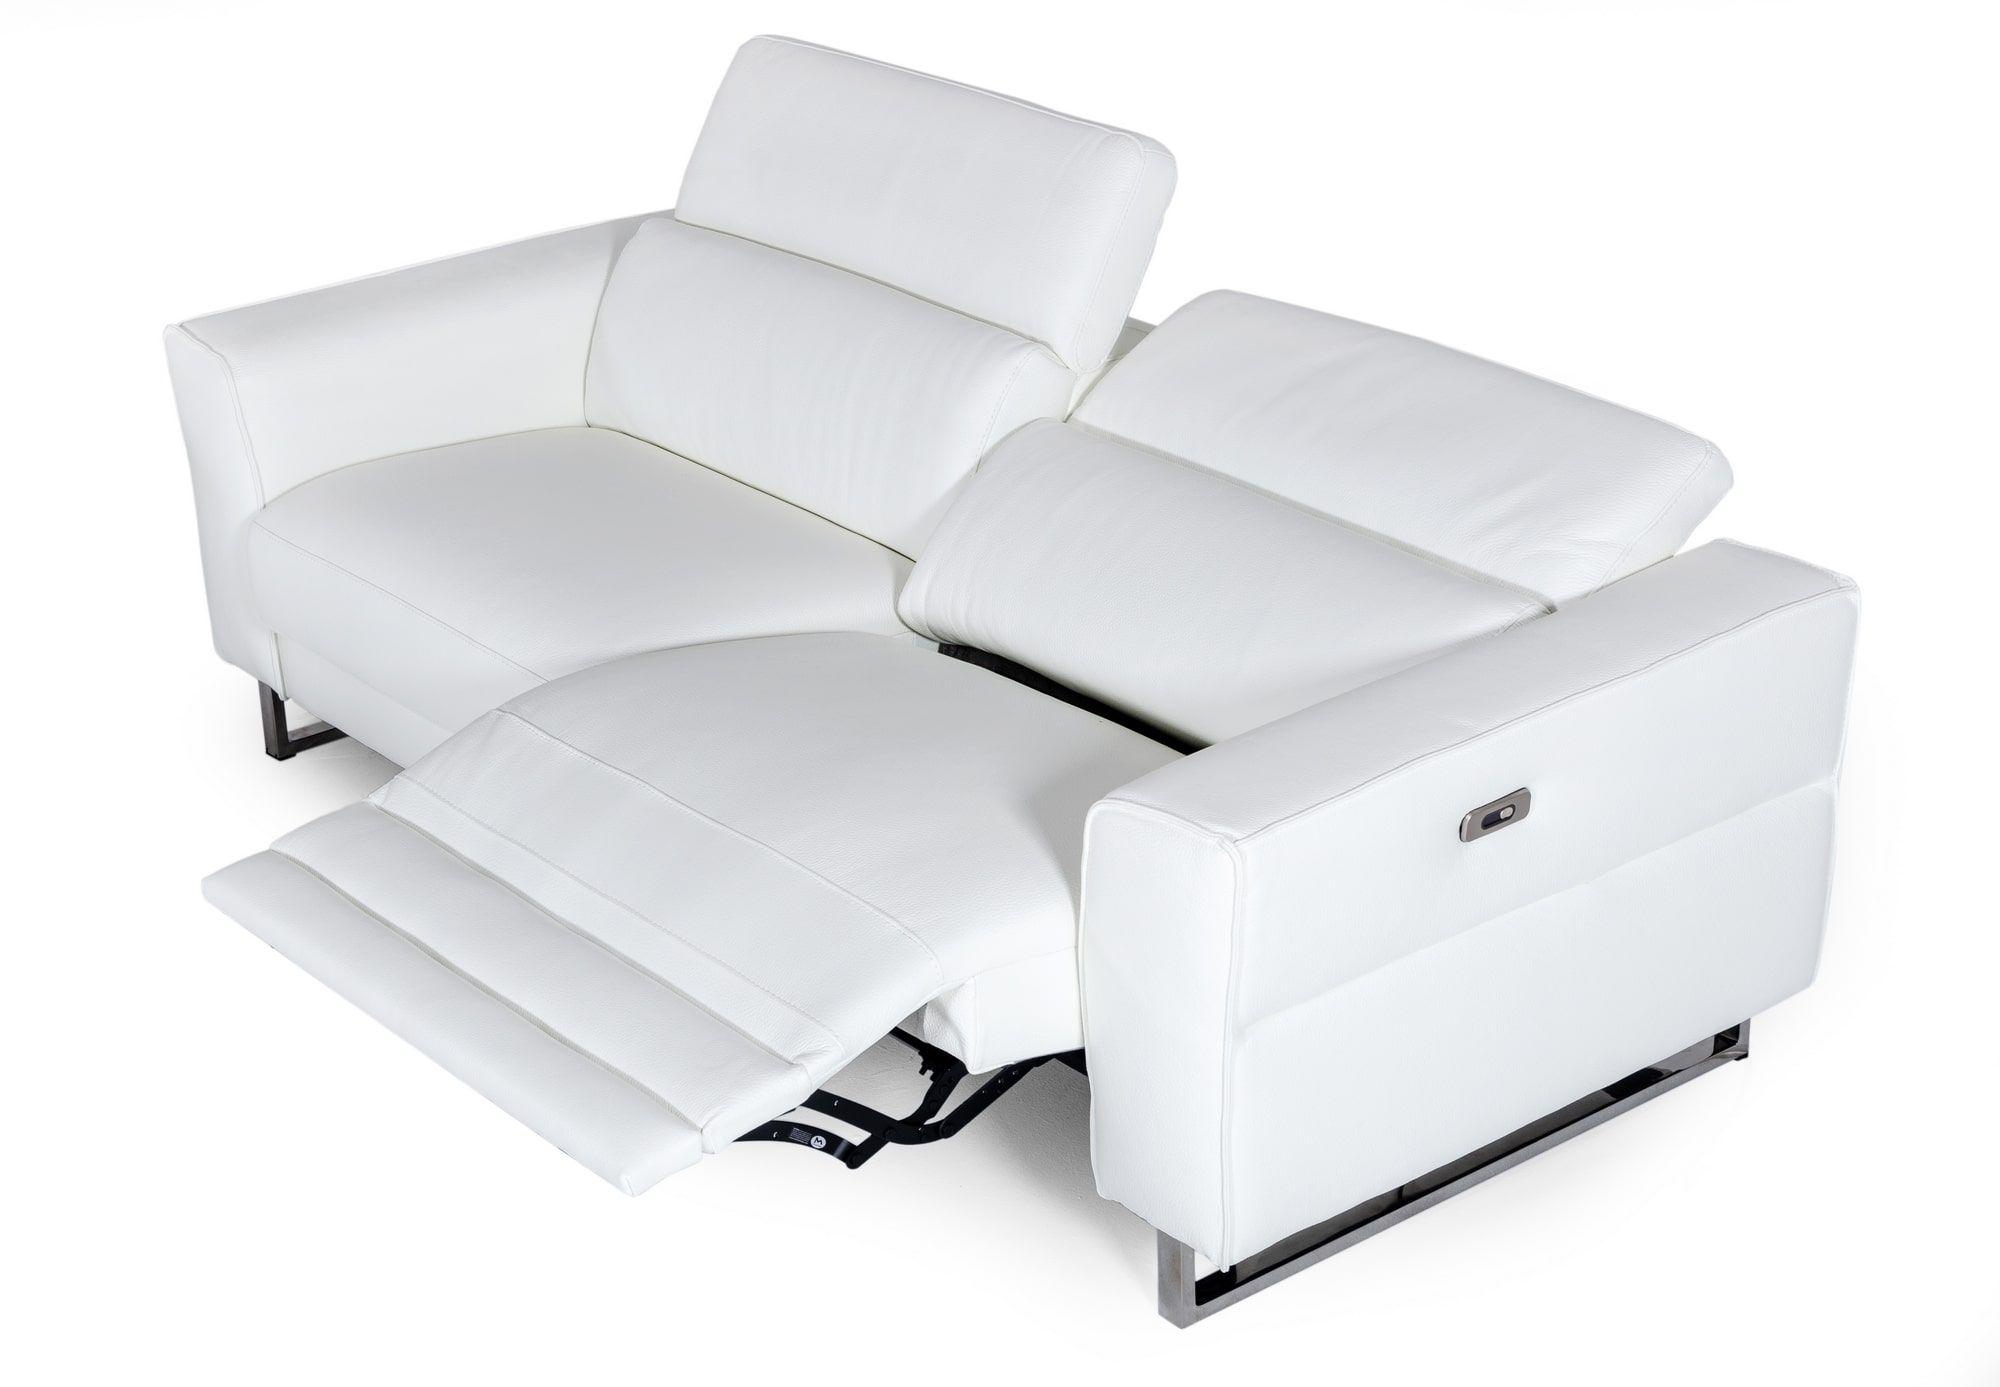 

    
VIG Furniture VGDDLUCCA-WHT-S Recliner Sofa White VGDDLUCCA-WHT-S
